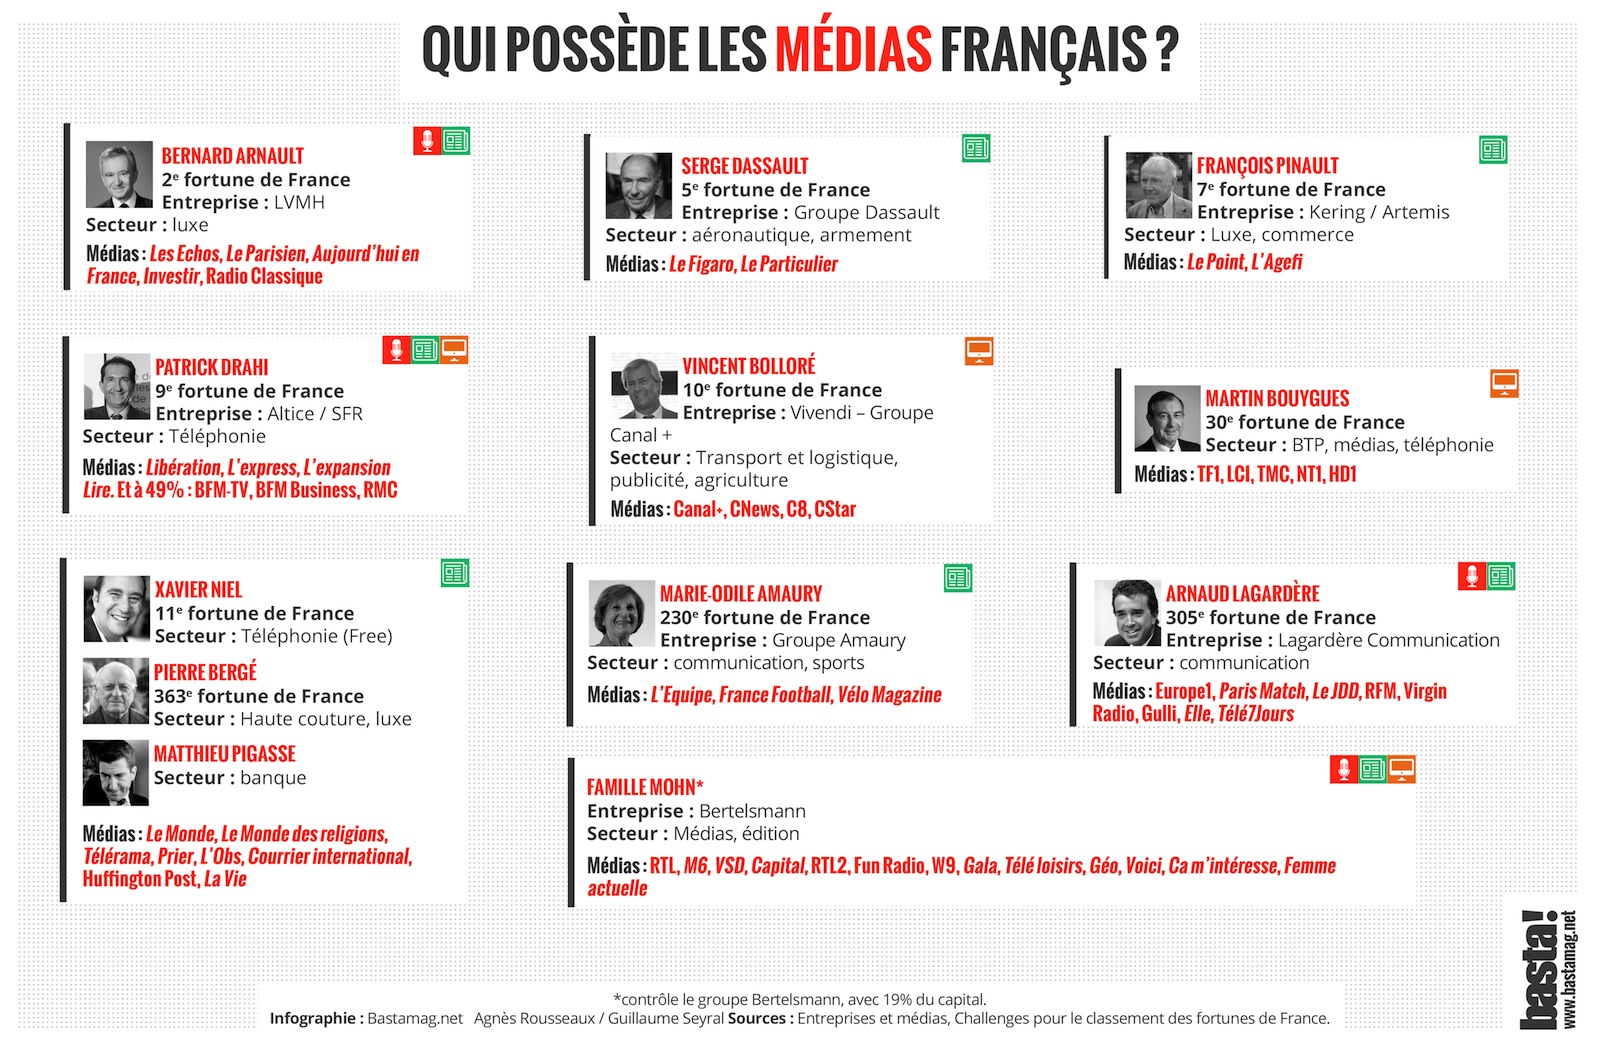 médias français - qui possède les médias français